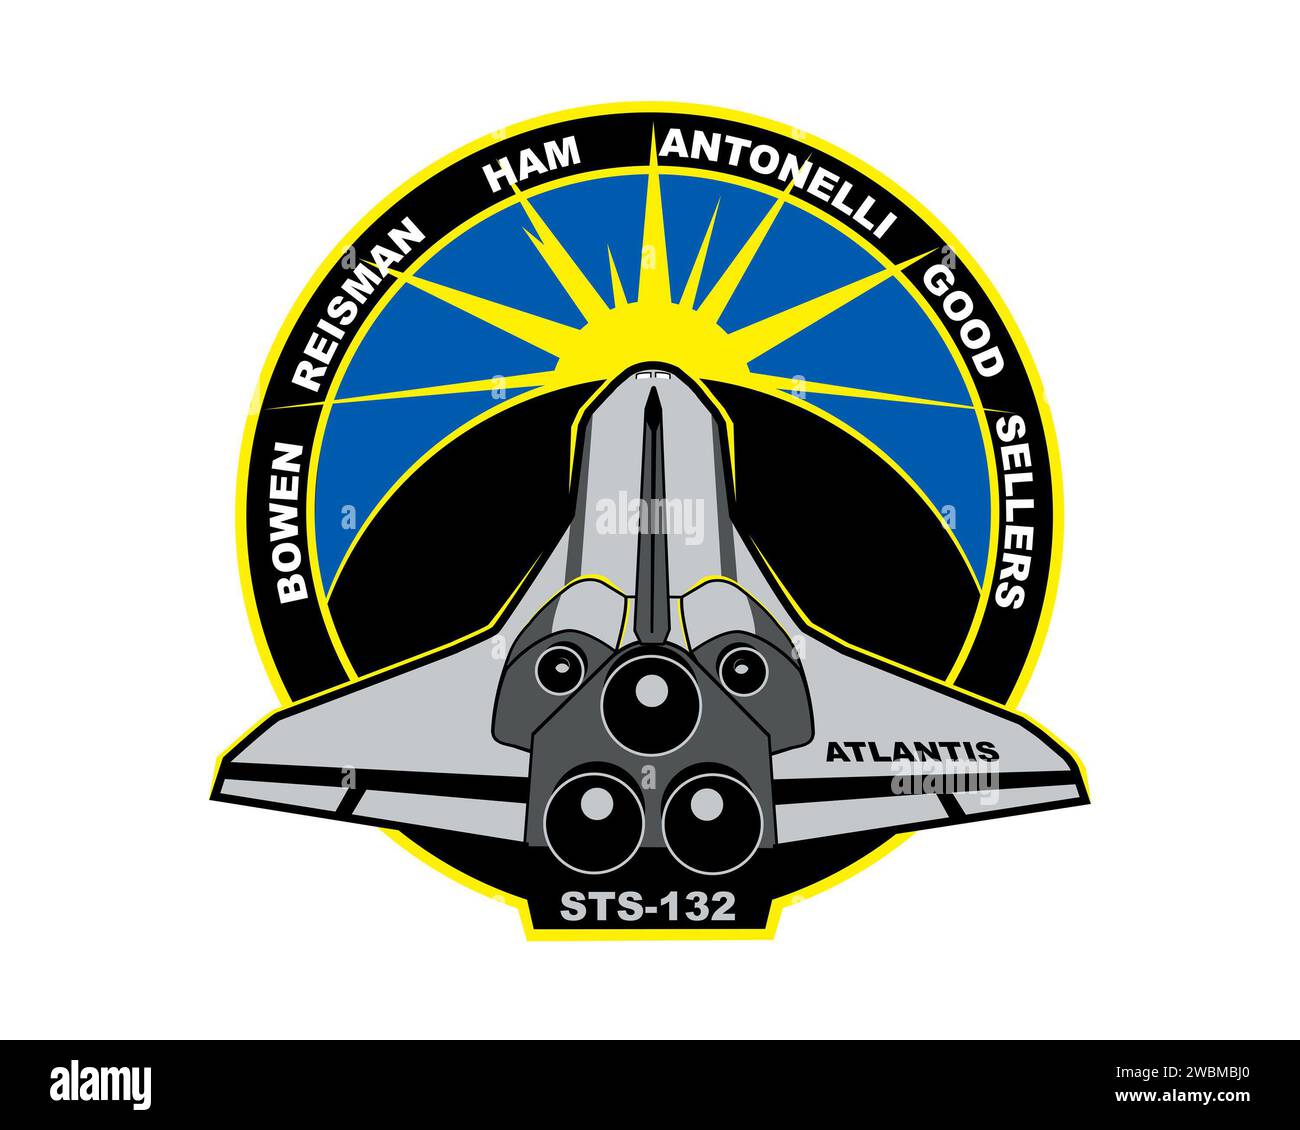 JOHNSON SPACE CENTER, Houston, Texas ---- STS132-S-001 (Februar 2010) --- die STS-132 Mission wird der 32. Flug des Space Shuttle Atlantis sein. Hauptziel der STS-132-Mission ist die Lieferung des in Russland hergestellten MRM-1 (Mini Research Module) an die Internationale Raumstation (ISS). Atlantis wird auch eine neue Kommunikationsantenne und einen neuen Satz Batterien für eine der ISS-Solararrays liefern. Auf dem STS-132-Mission-Patch fliegt Atlantis in den Sonnenuntergang, während sich das Ende des Space Shuttle-Programms nähert. Die Sonne kündigt jedoch auch das Versprechen eines neuen Tages an, als sie aufgeht Stockfoto